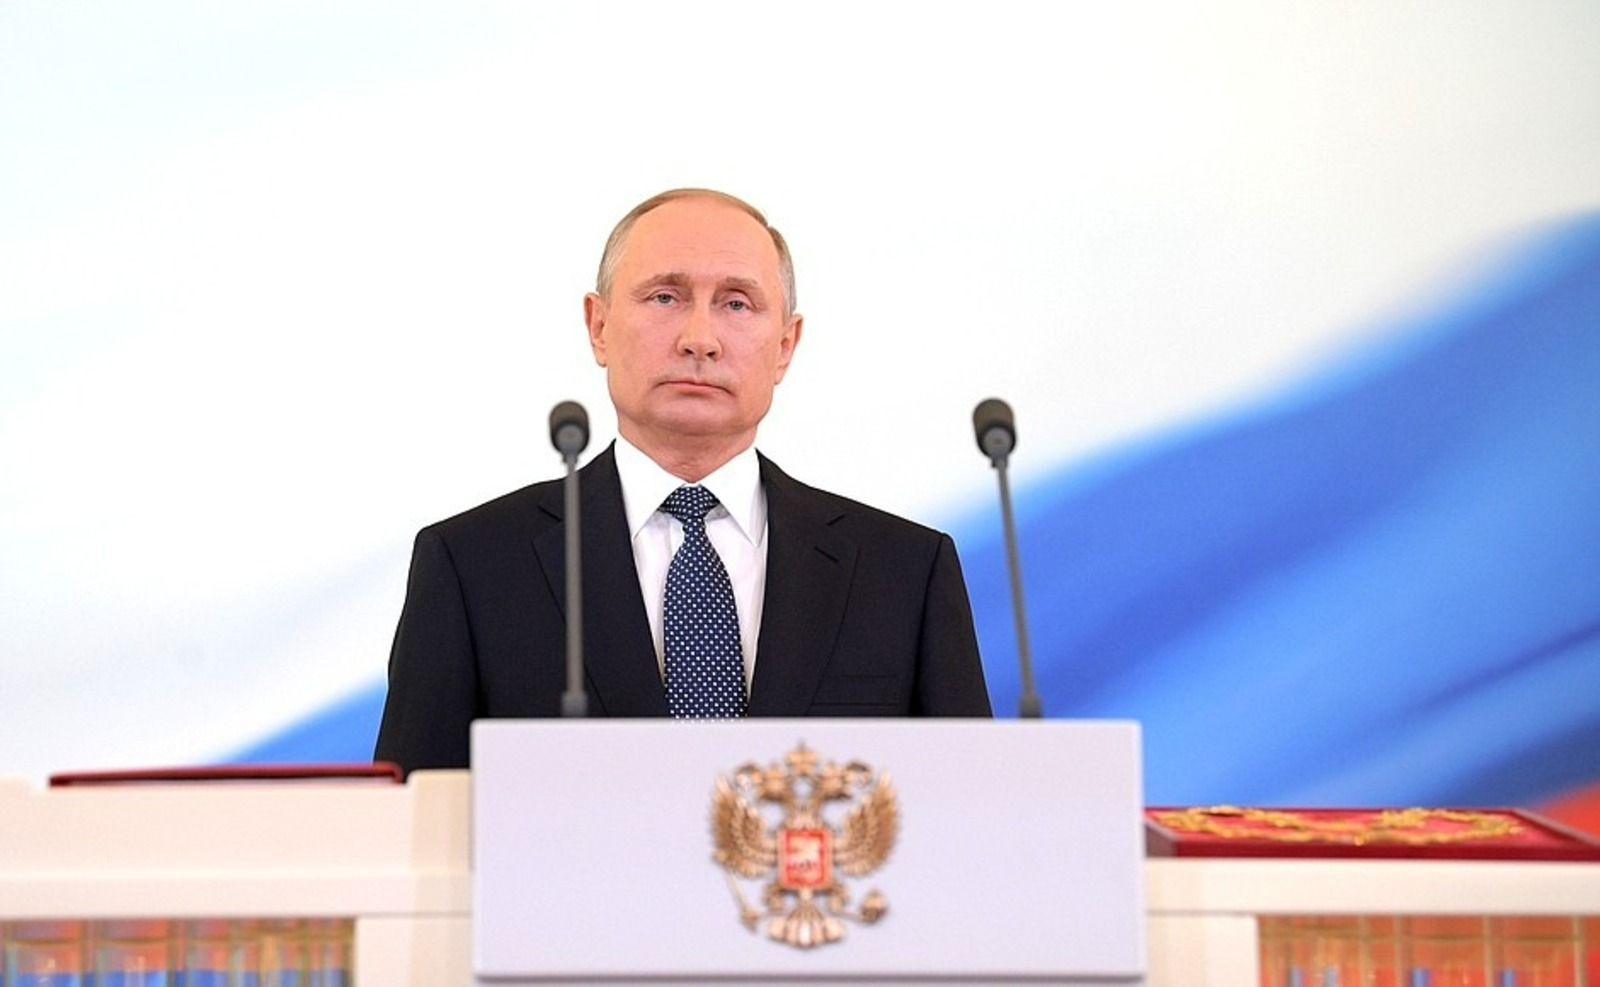 Сегодня состоится инаугурация президента России Владимира Путина